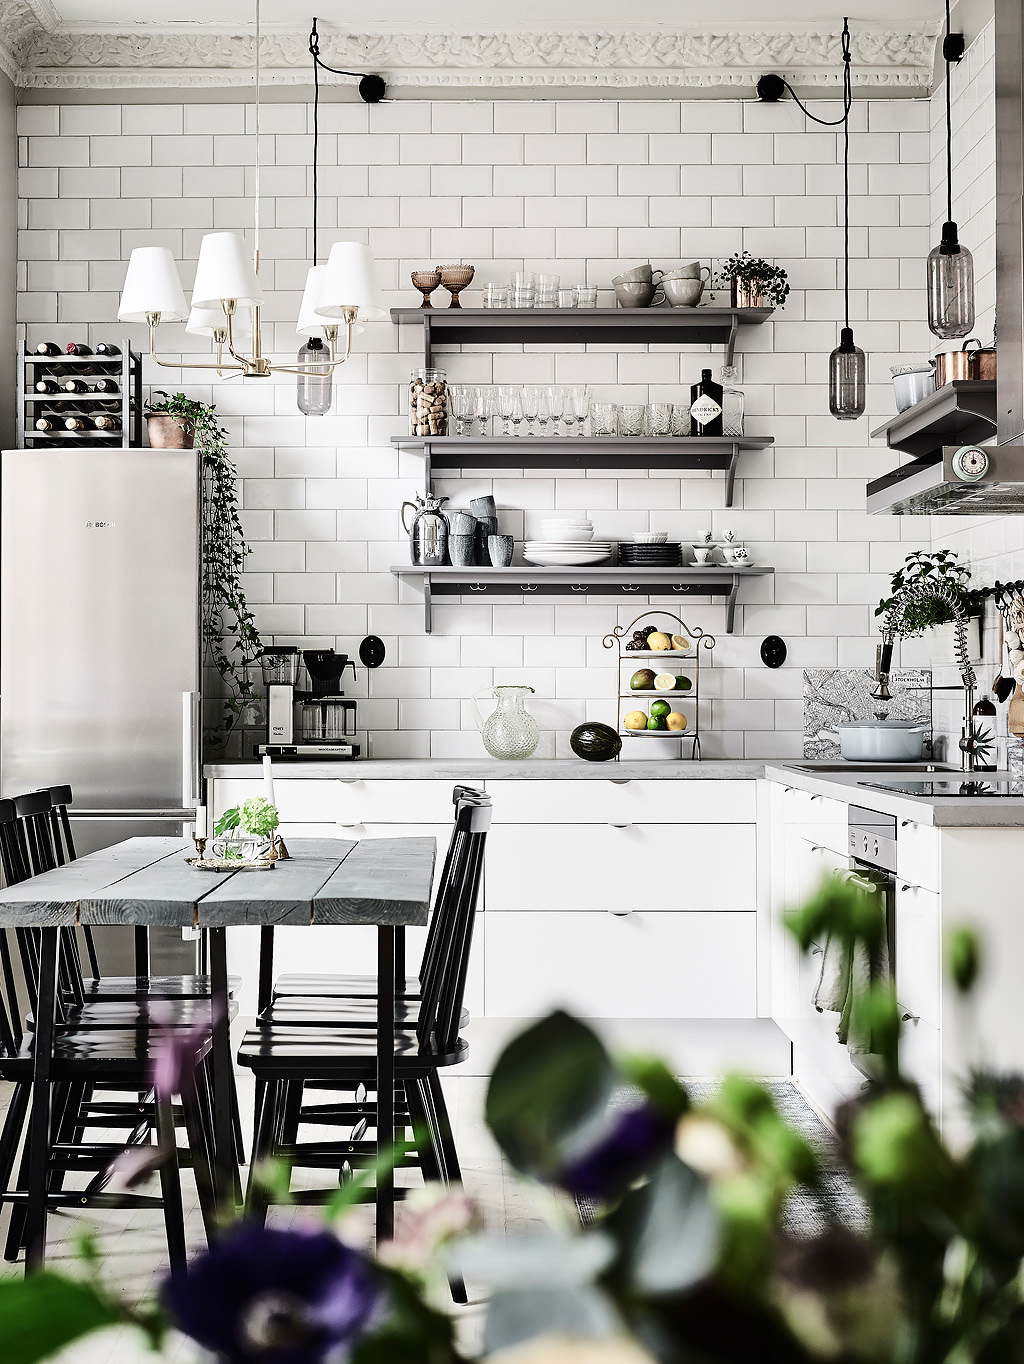 https://www.home-designing.com/wp-content/uploads/2017/01/Scandinavian-look-grey-kitchen-designs.jpg